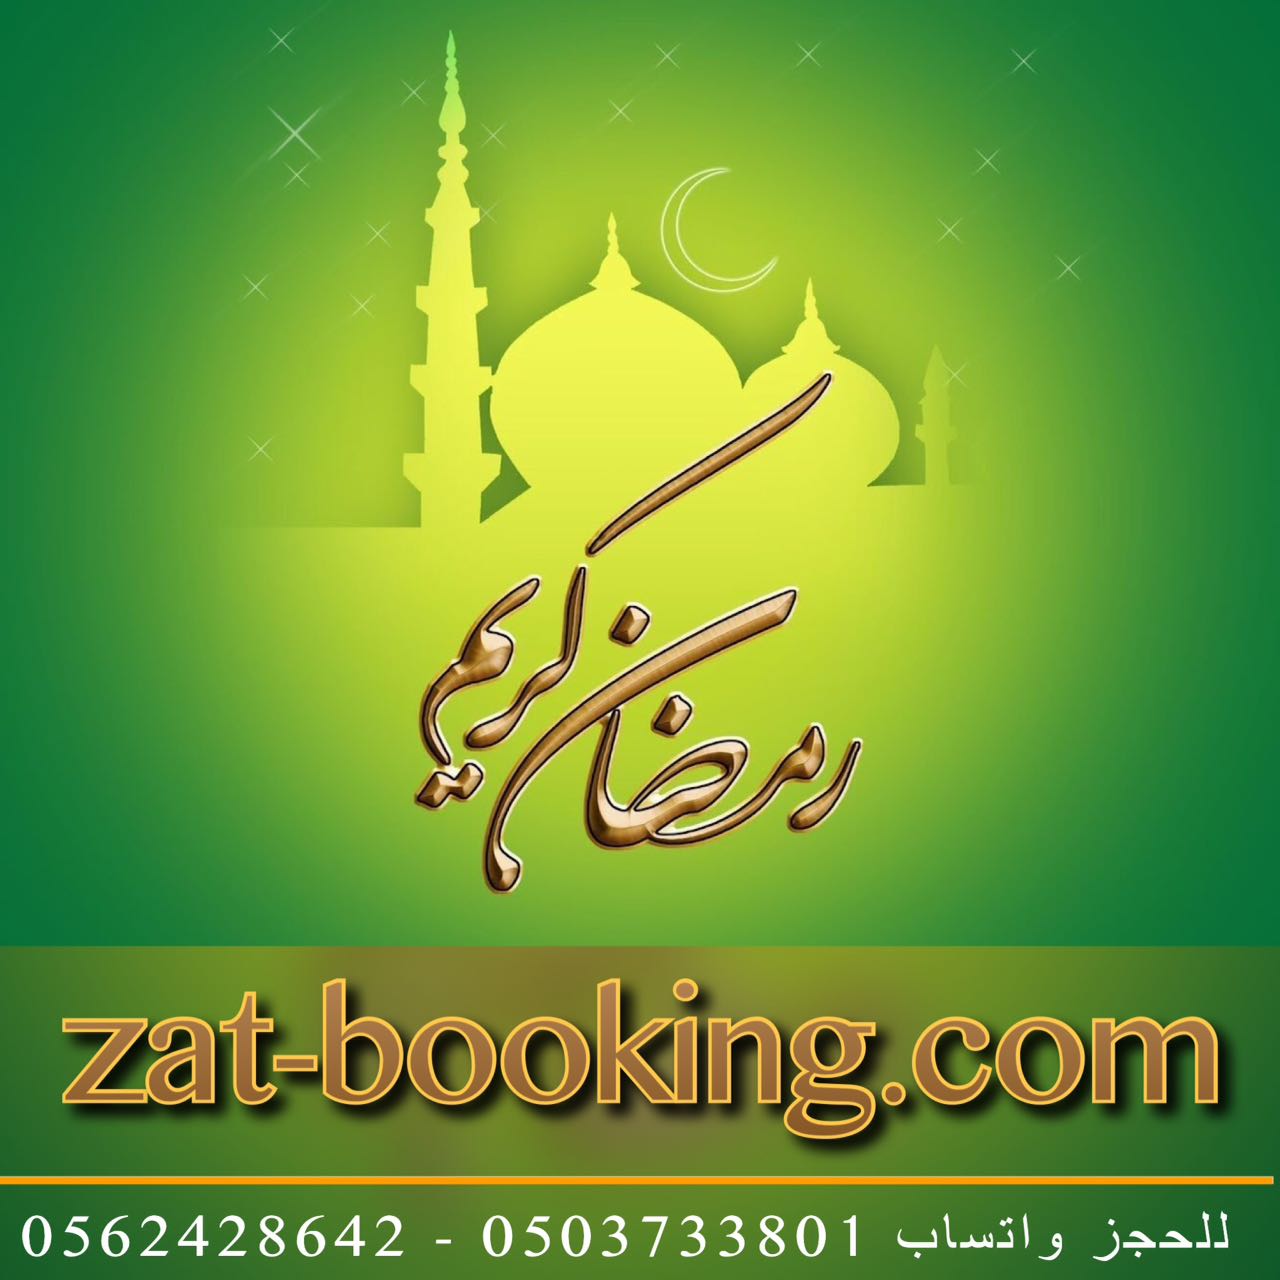 makkah hotels offers rates in ramadan month 1440